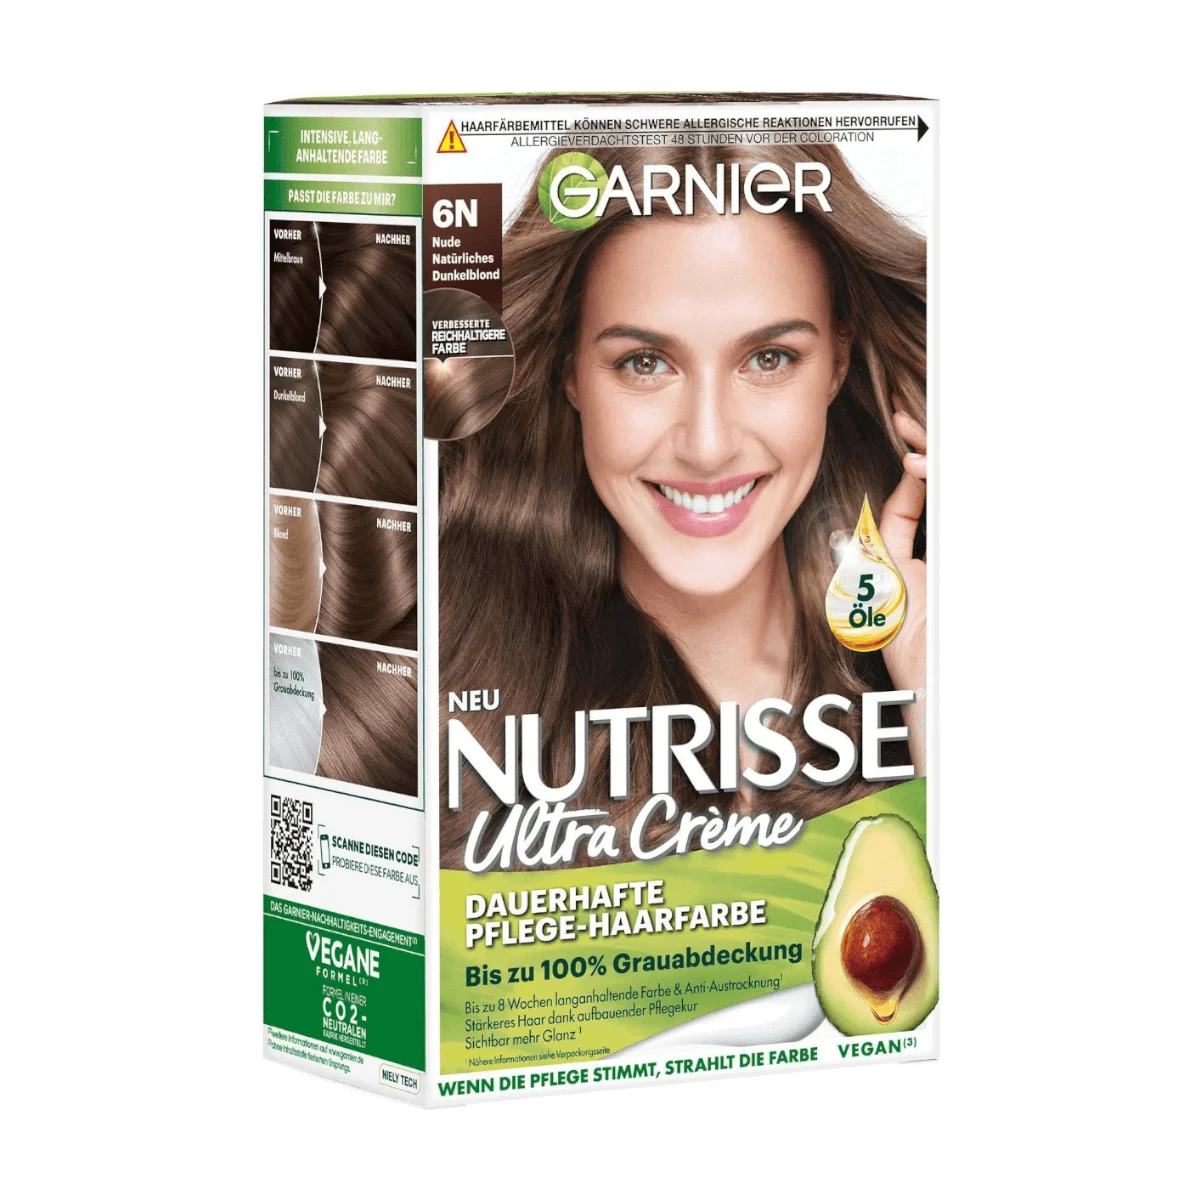 Garnier Nutrisse Ultra Creme Haarfarbe 6N Nude Natürliches Dunkelblond, 1 Stk